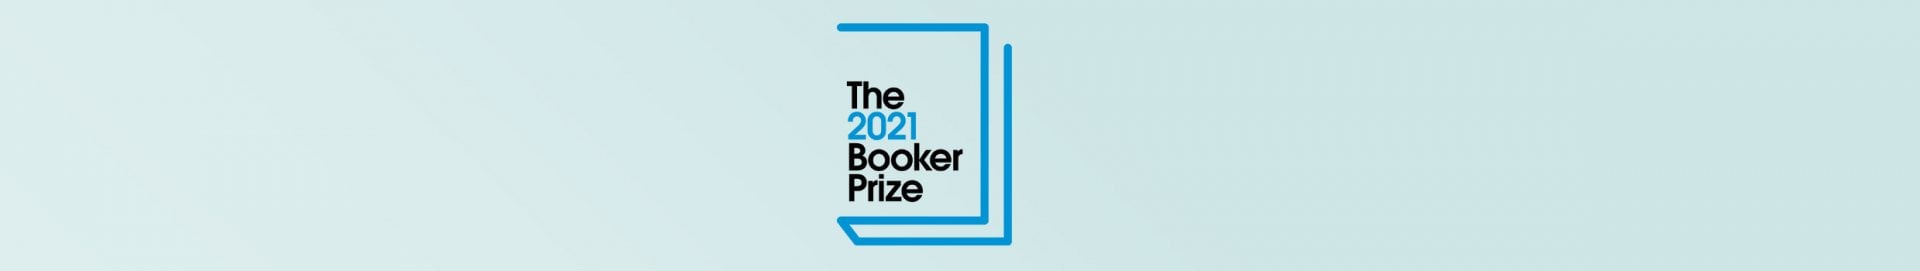 booker prize 2021